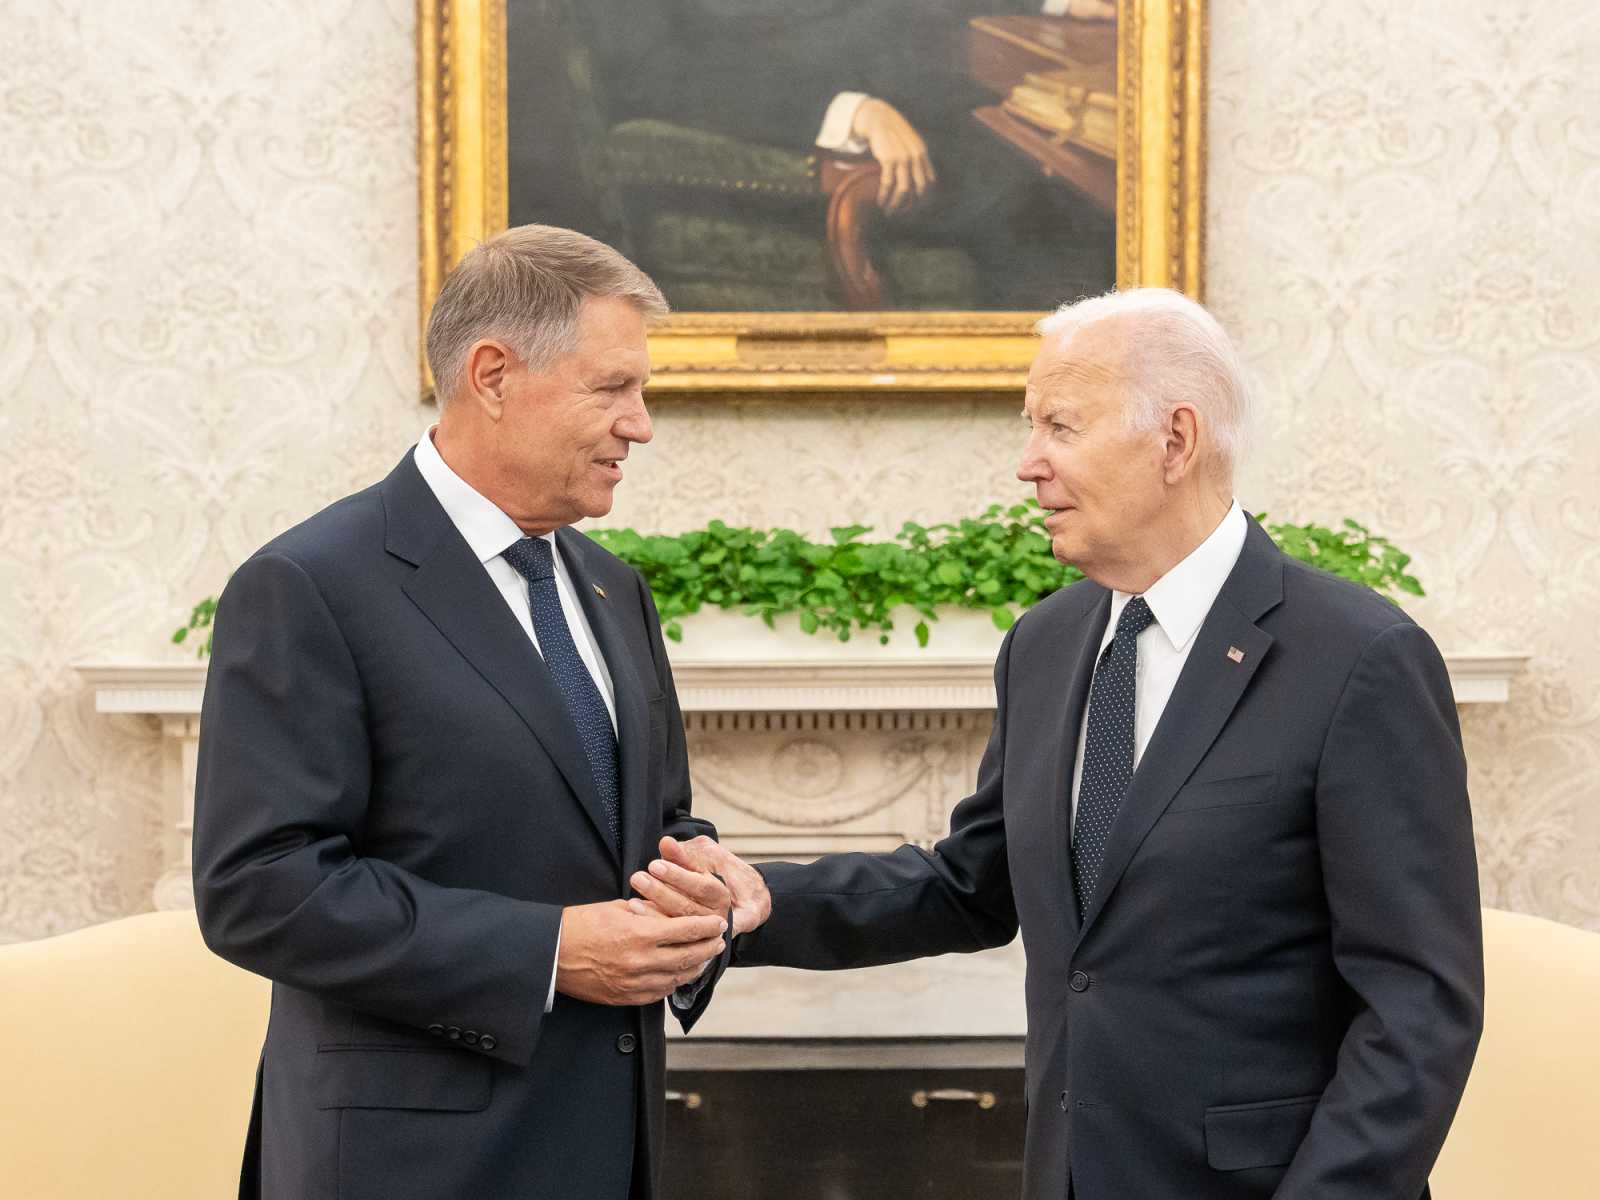 Iohannis és Joe Biden amerikai elnök Washingtonban. Állítólag a román államfő már megállapodott kiemelt szövetségeseivel. Ennek megfelelően június elején, azaz egy hónappal a washingtoni NATO-csúcs előtt kilép a NATO-főtitkári versenyből Fotó: Klaus Iohannis Facebook oldala